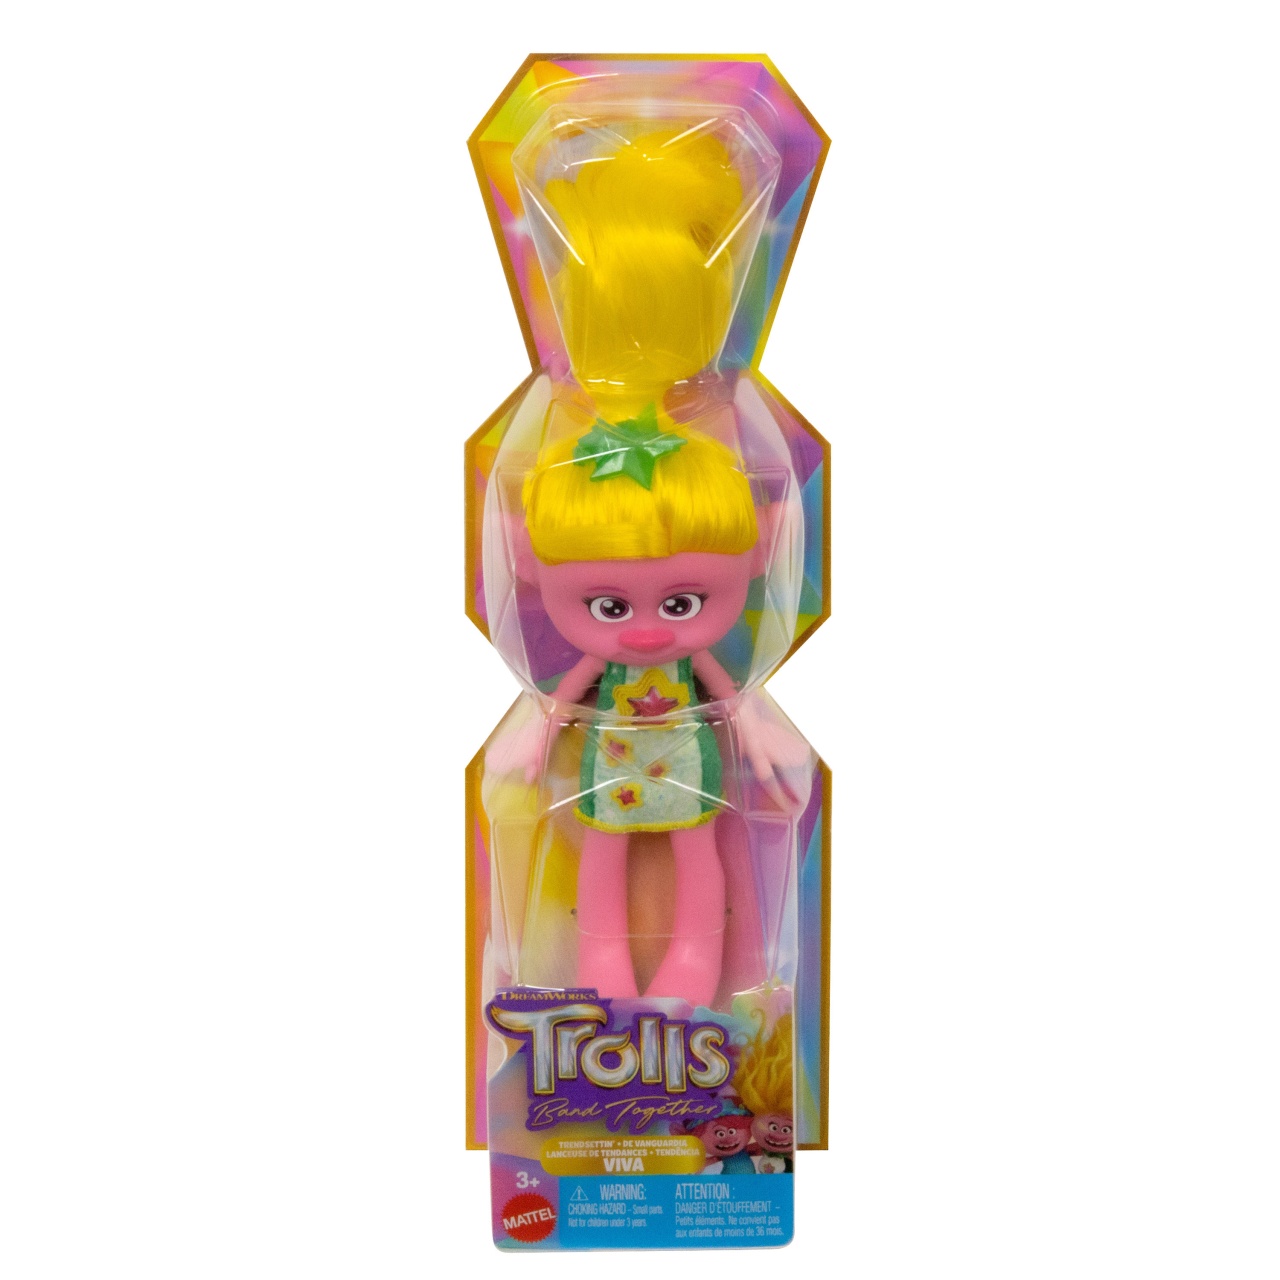 Trolls Viva 30 cm Puppe von Mattel